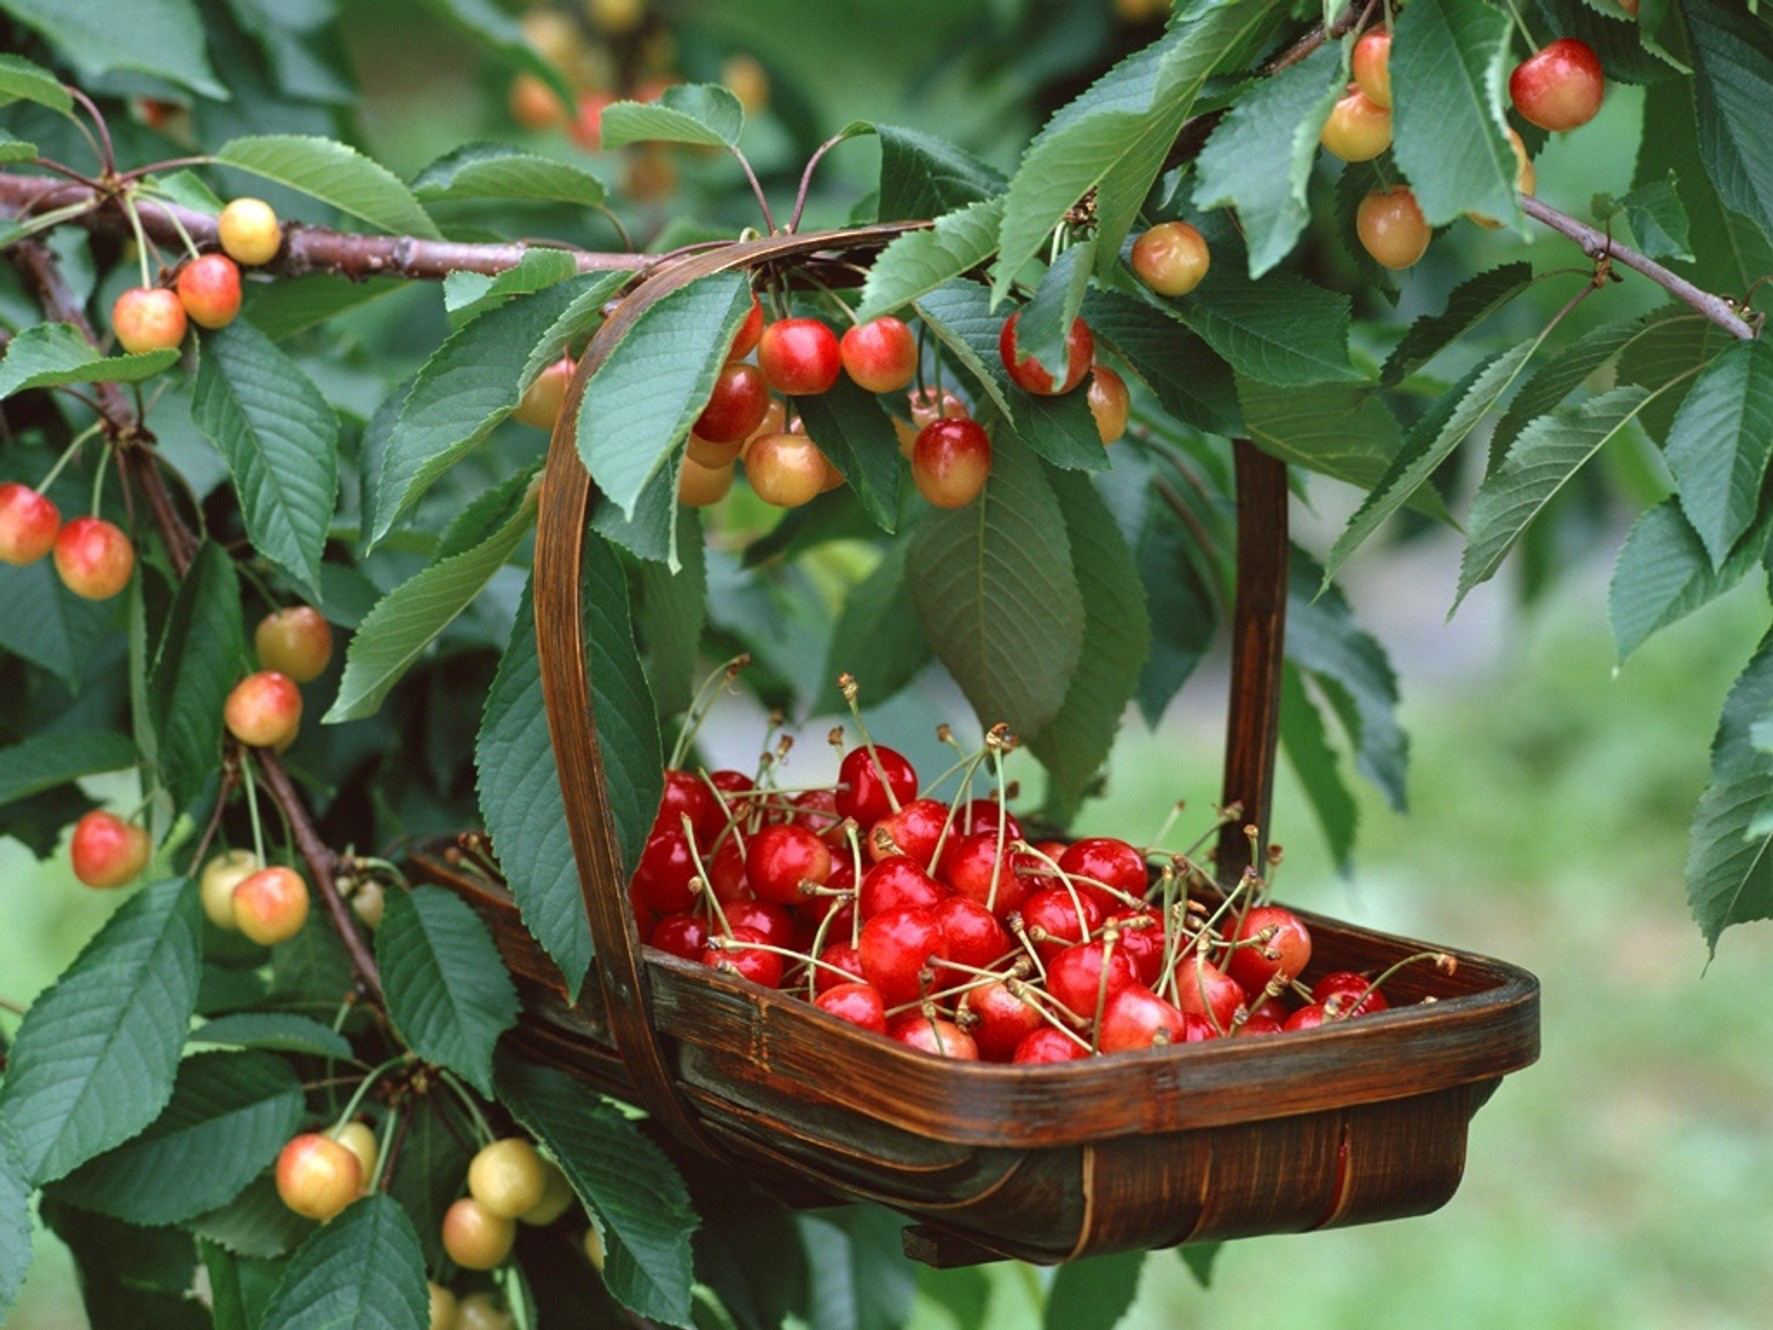 Ca sĩ Bằng Kiều chia sẻ hài hước việc trồng cherry cả năm ra 2 quả, dẫu biết trồng loại quả này khó nhưng vẫn có cách cho năng suất cao nếu chị em muốn thử sức - Ảnh 6.